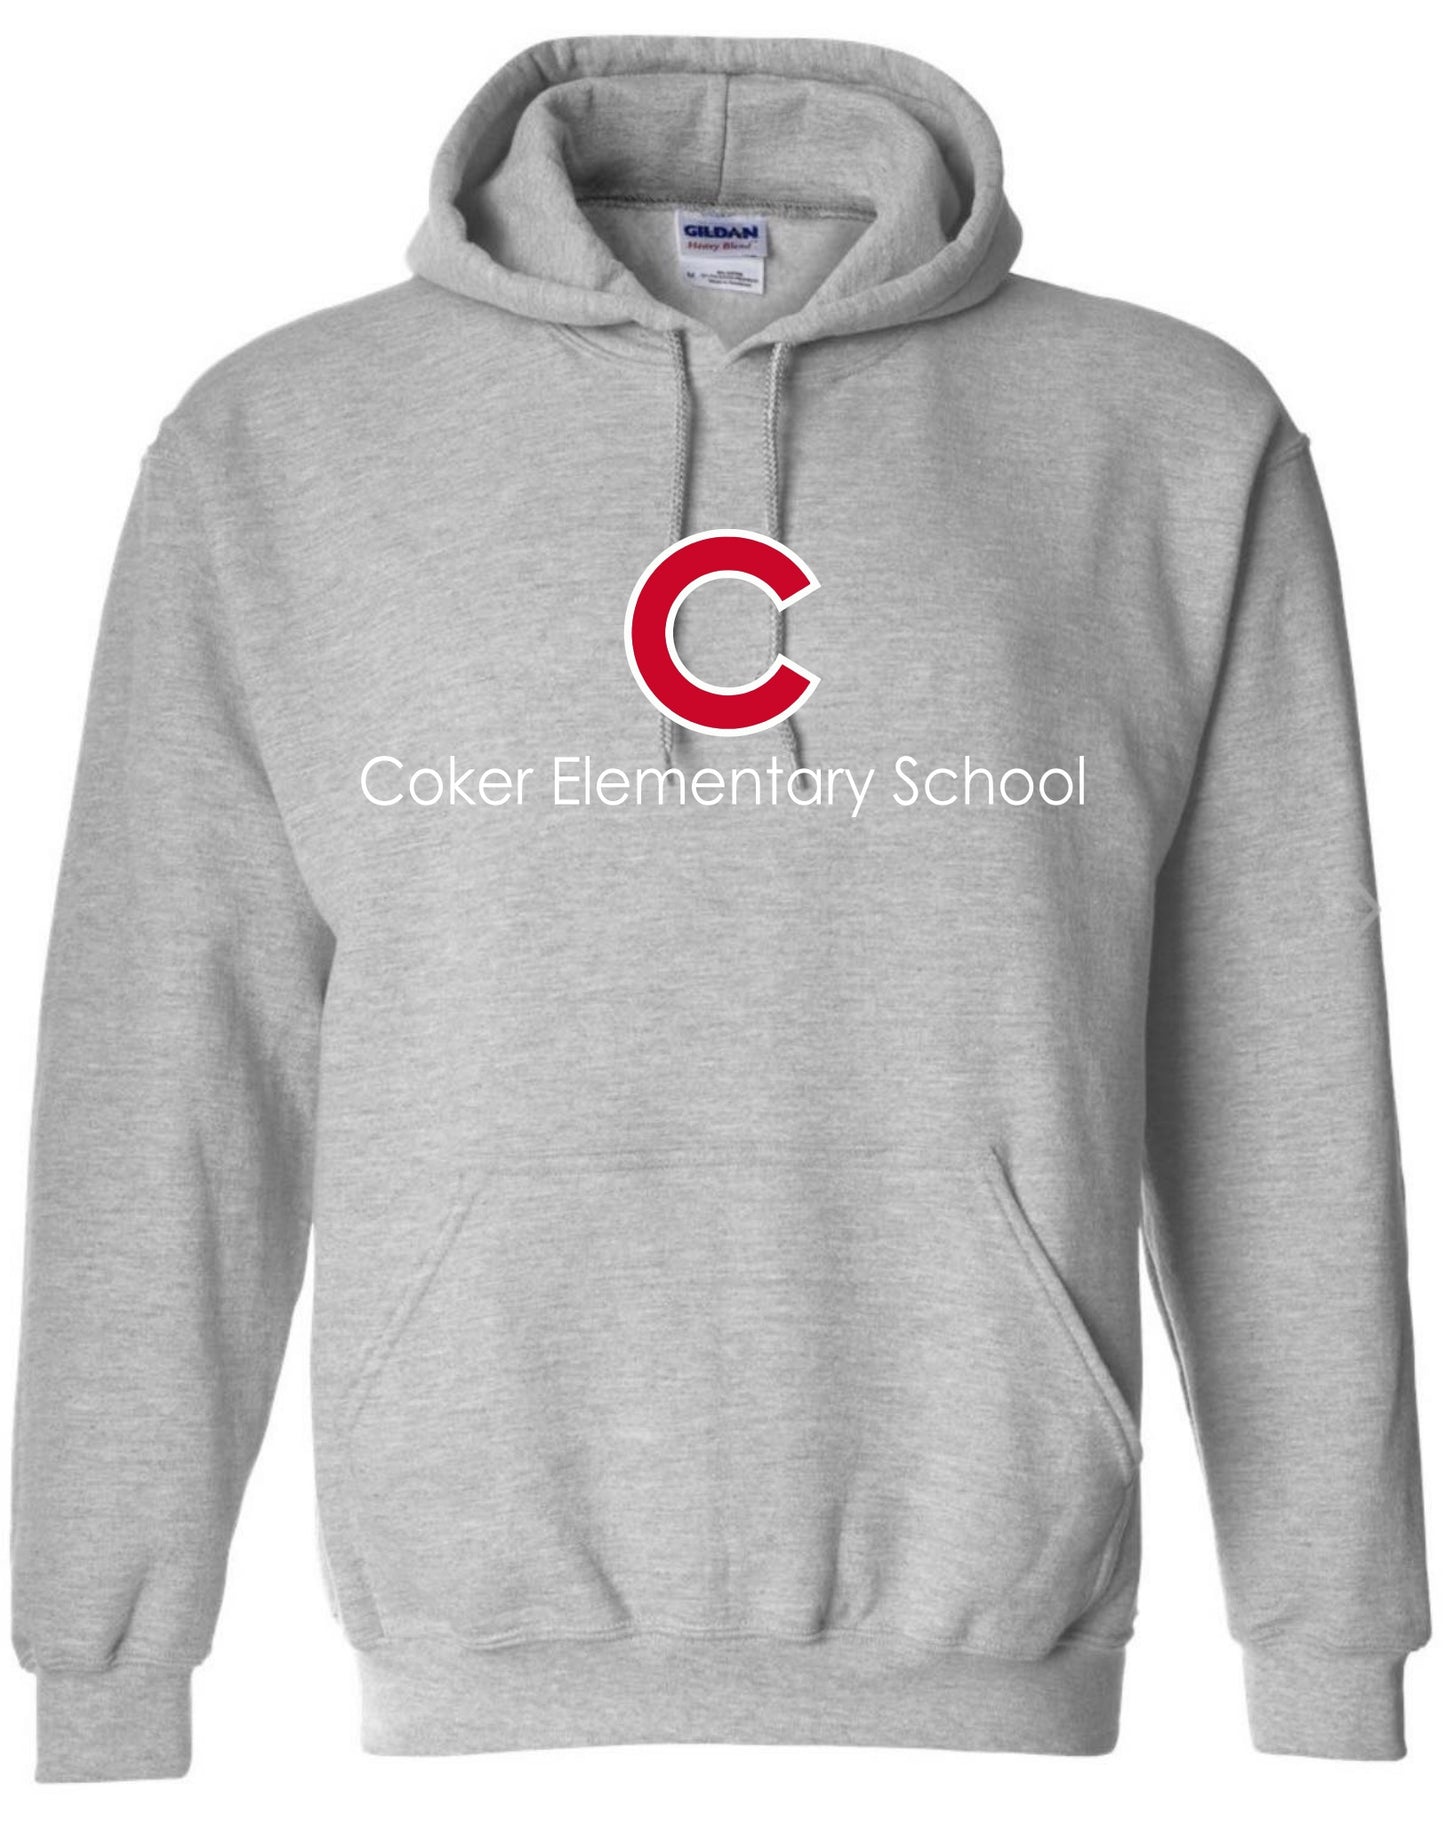 Coker Elementary School Hoodie